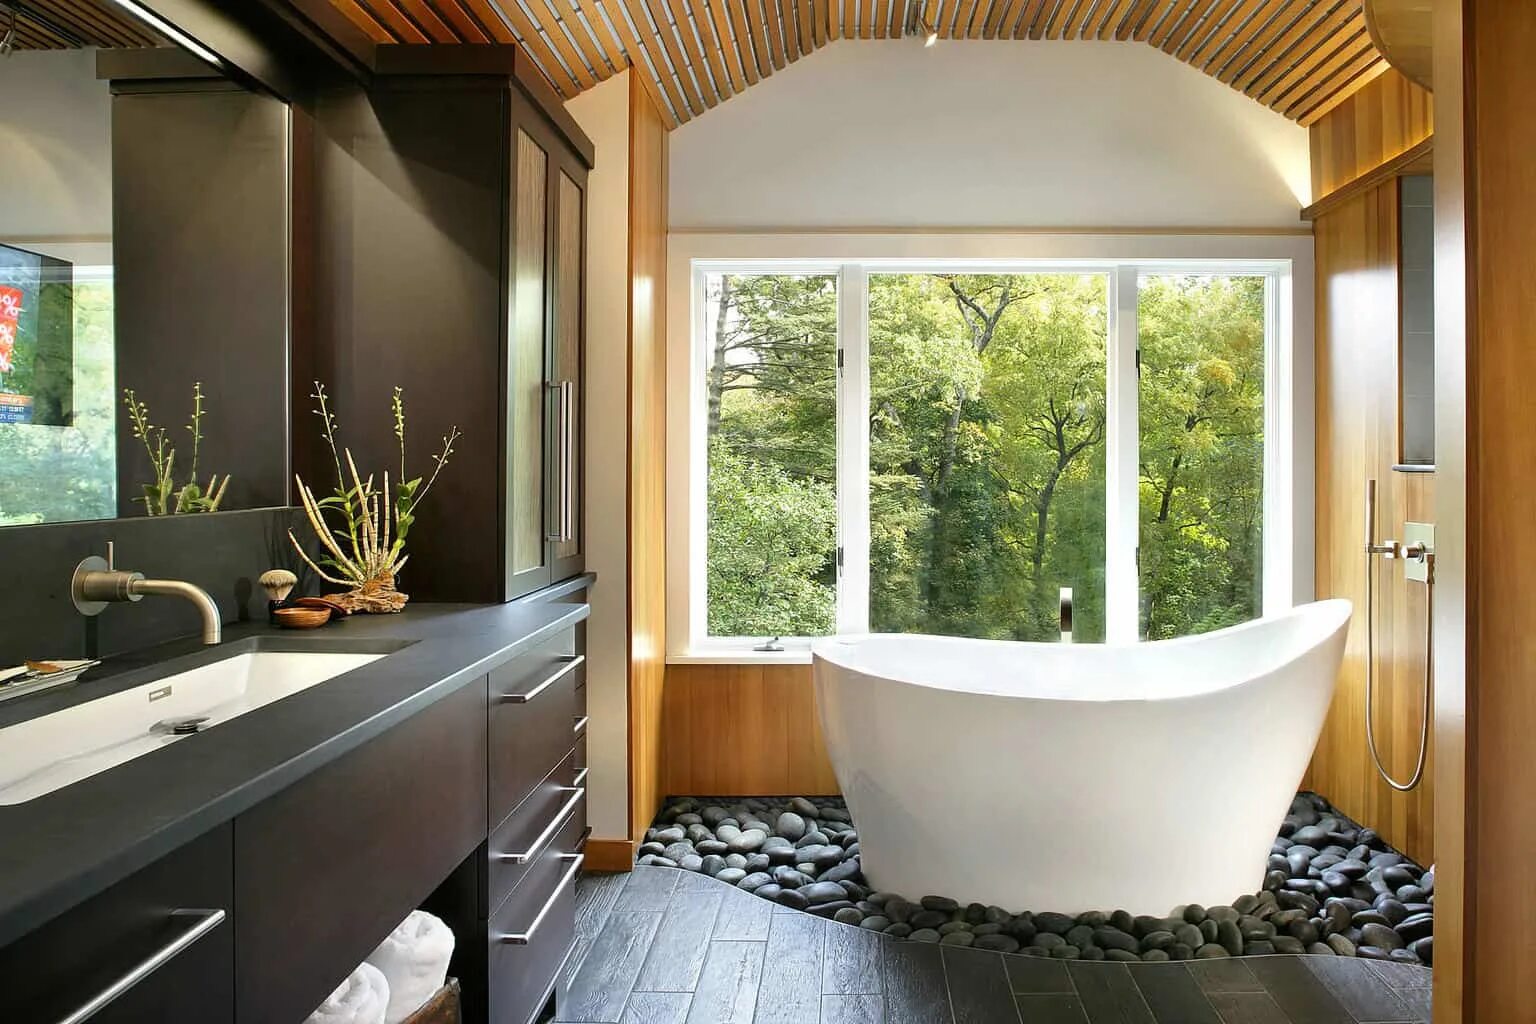 Ванна с большим окном. Ванная комната с окном. Интерьер ванной с окном. Небольшая ванная с окном. Ванная с панорамным окном.